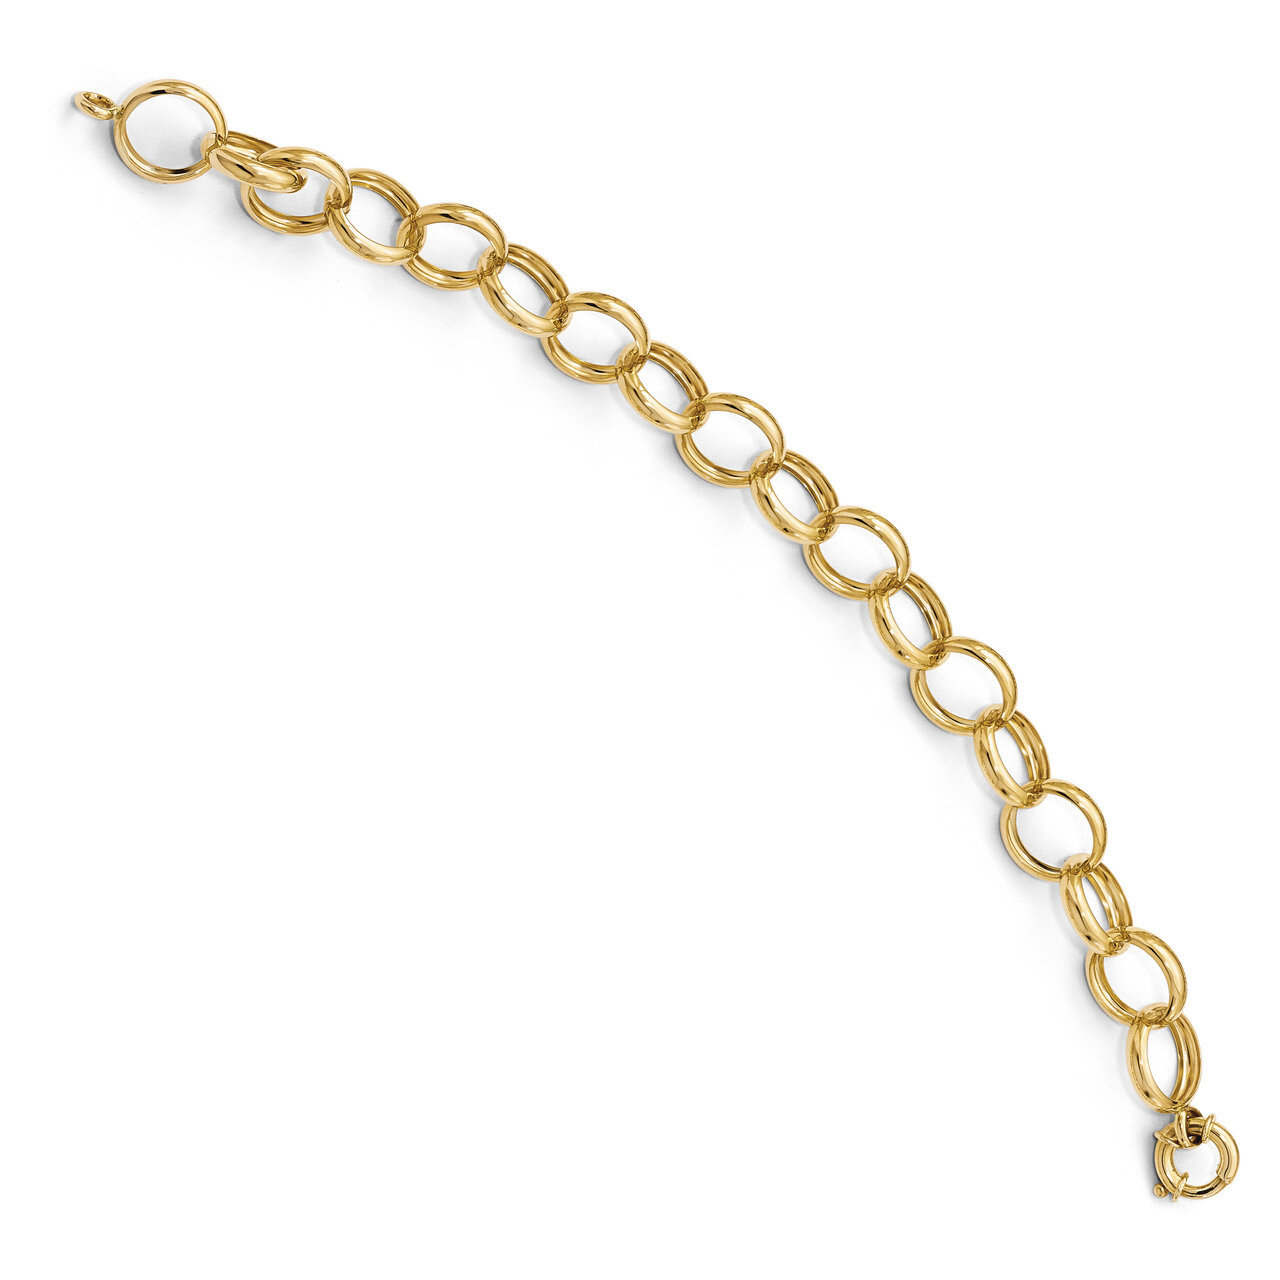 Bracelets 8 Inch 14k Gold HB-LF766-8